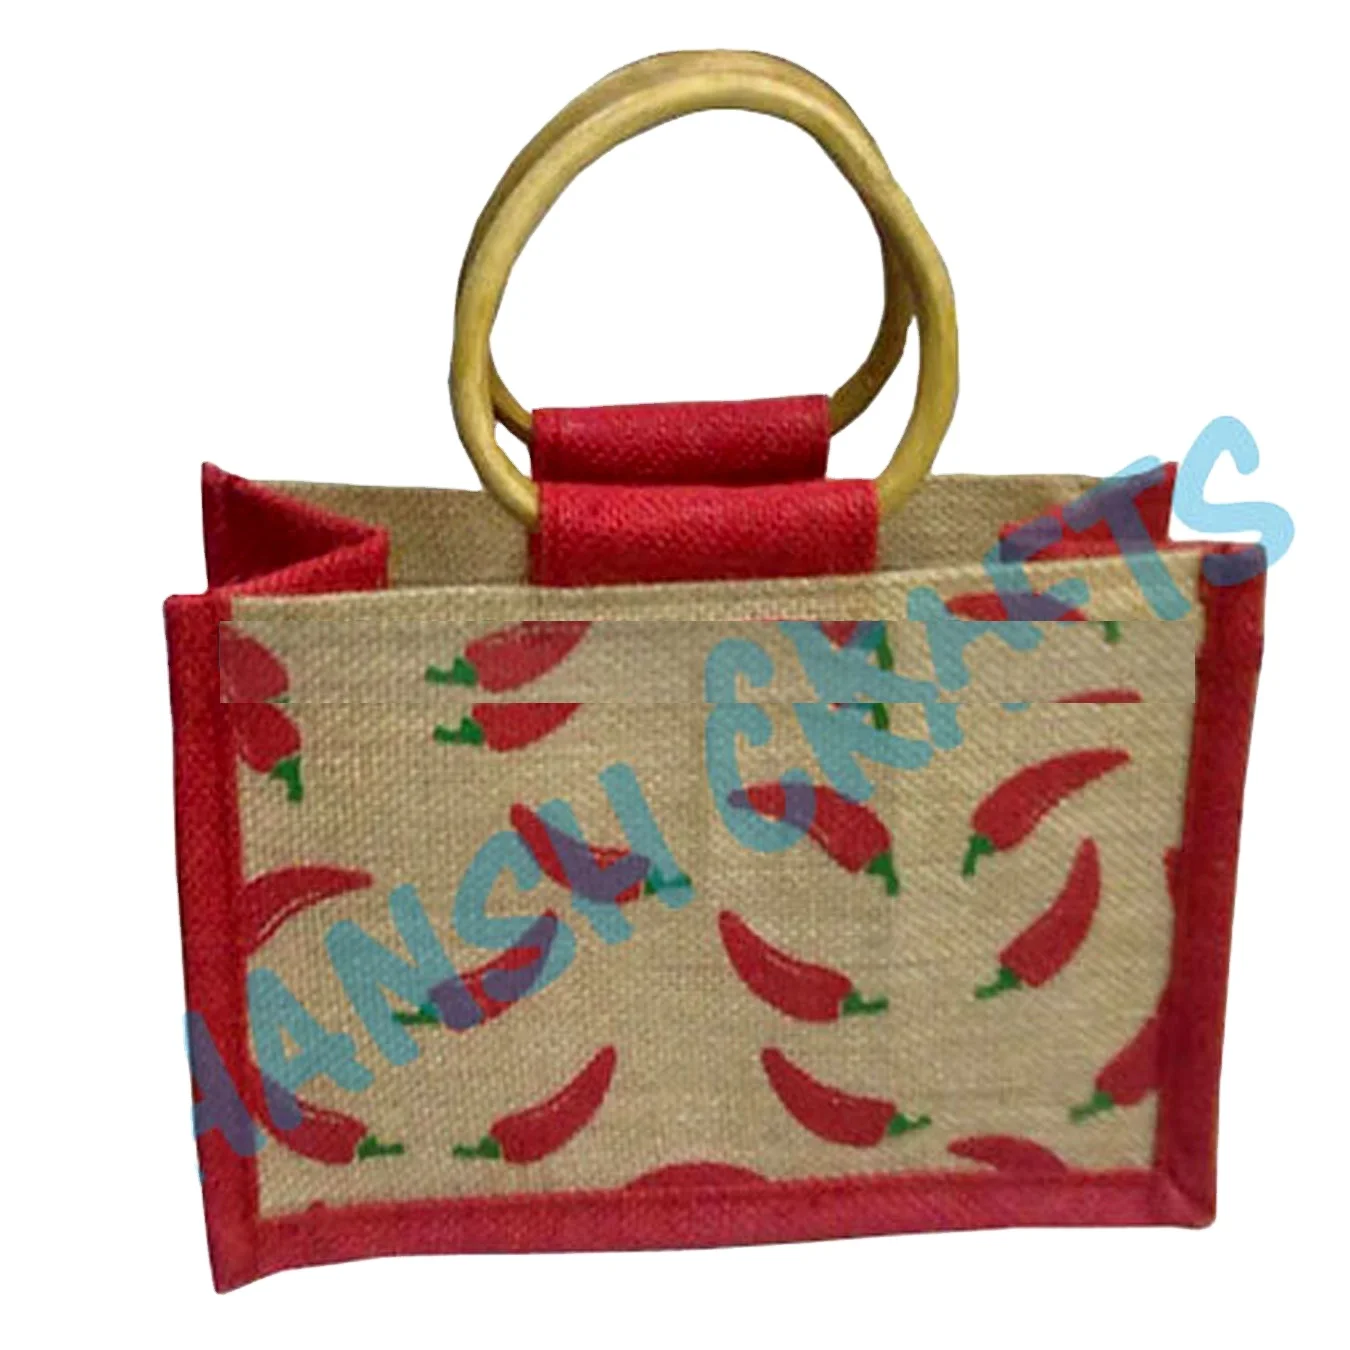 Jute bag for lunch box – Jute handbag, jute tote, jute lunch bags for office,  Printed jute bag – ZIP, (Pack of 1)